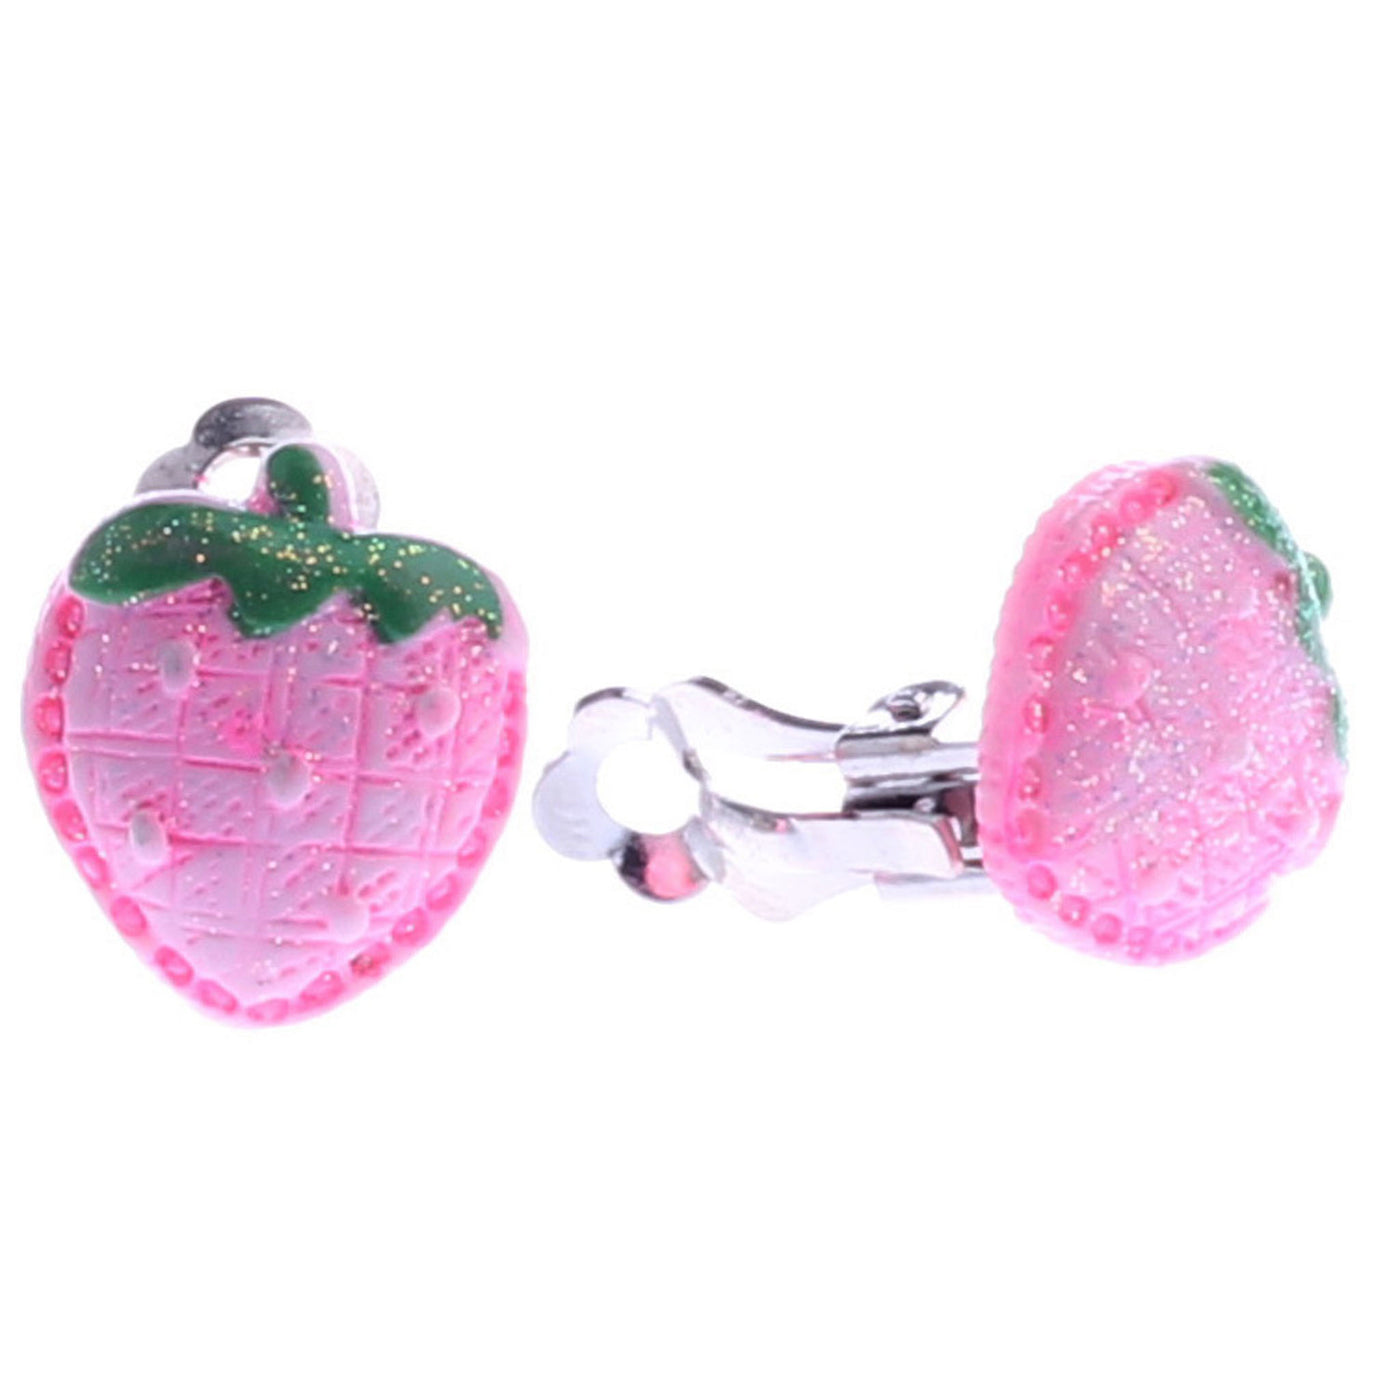 Strawberry clip earrings